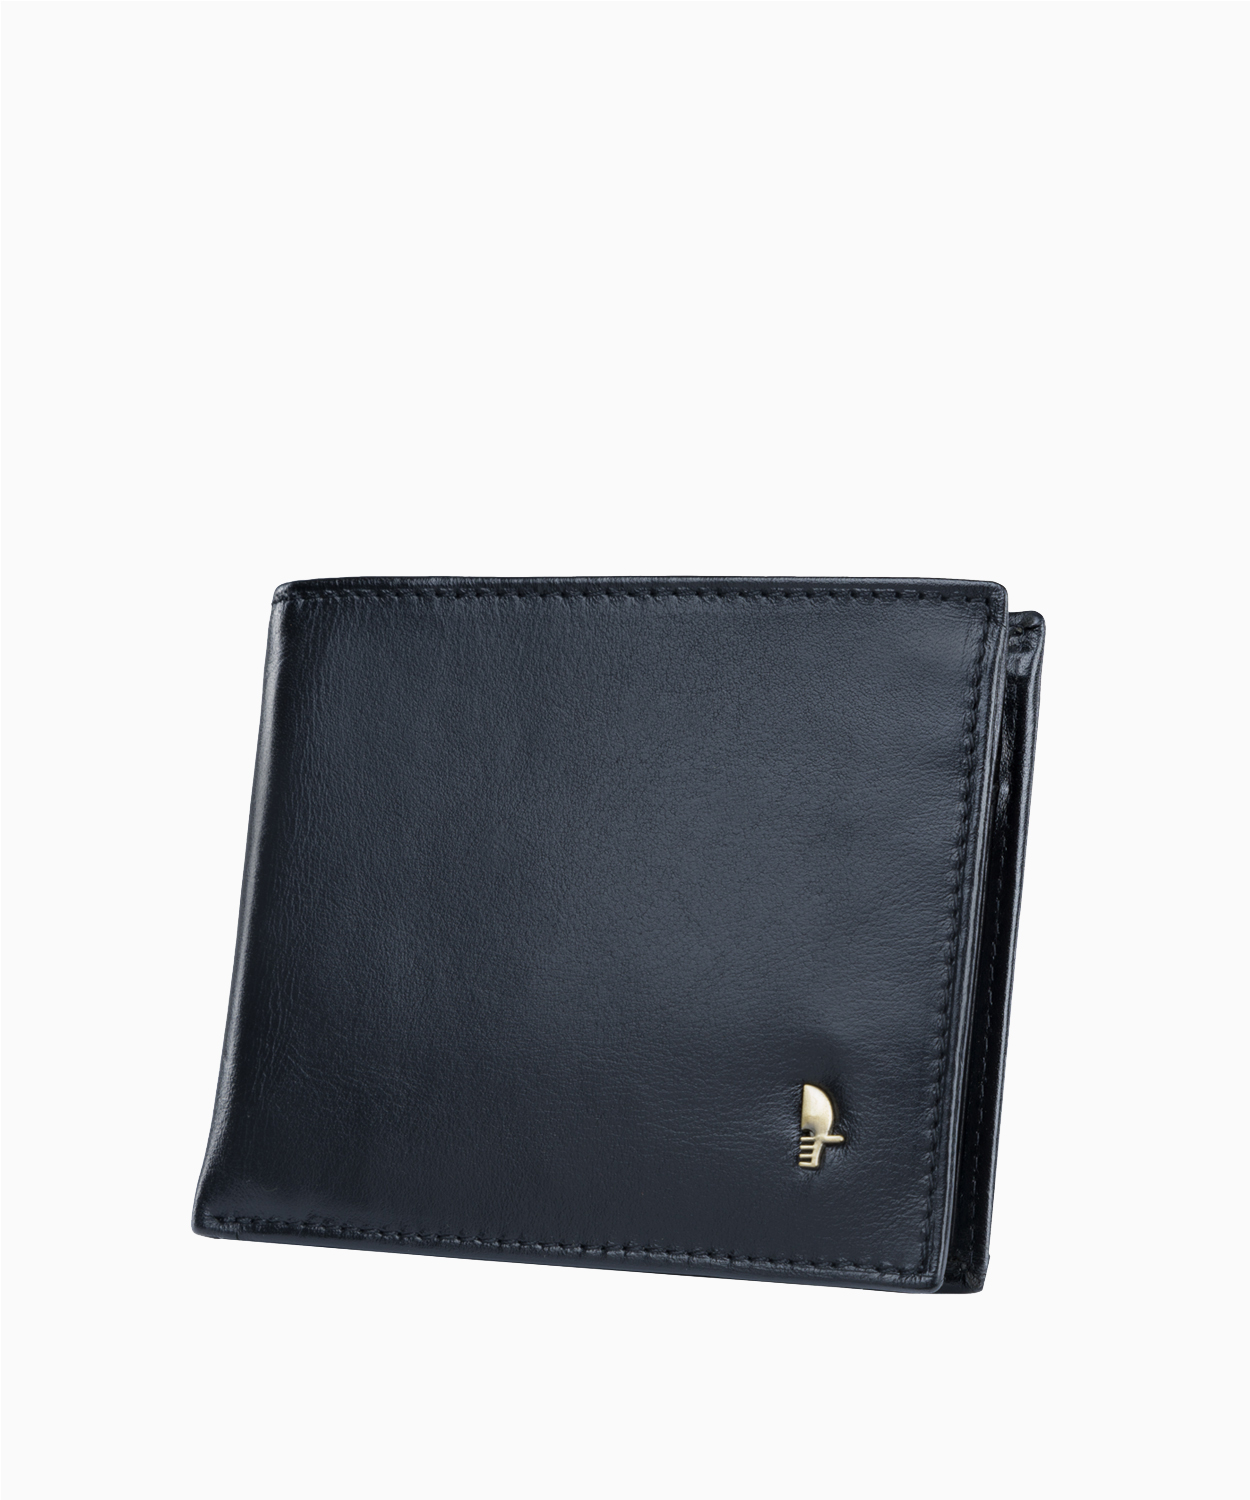 PUCCINI Skórzany portfel męski z zabezpieczeniem RFID